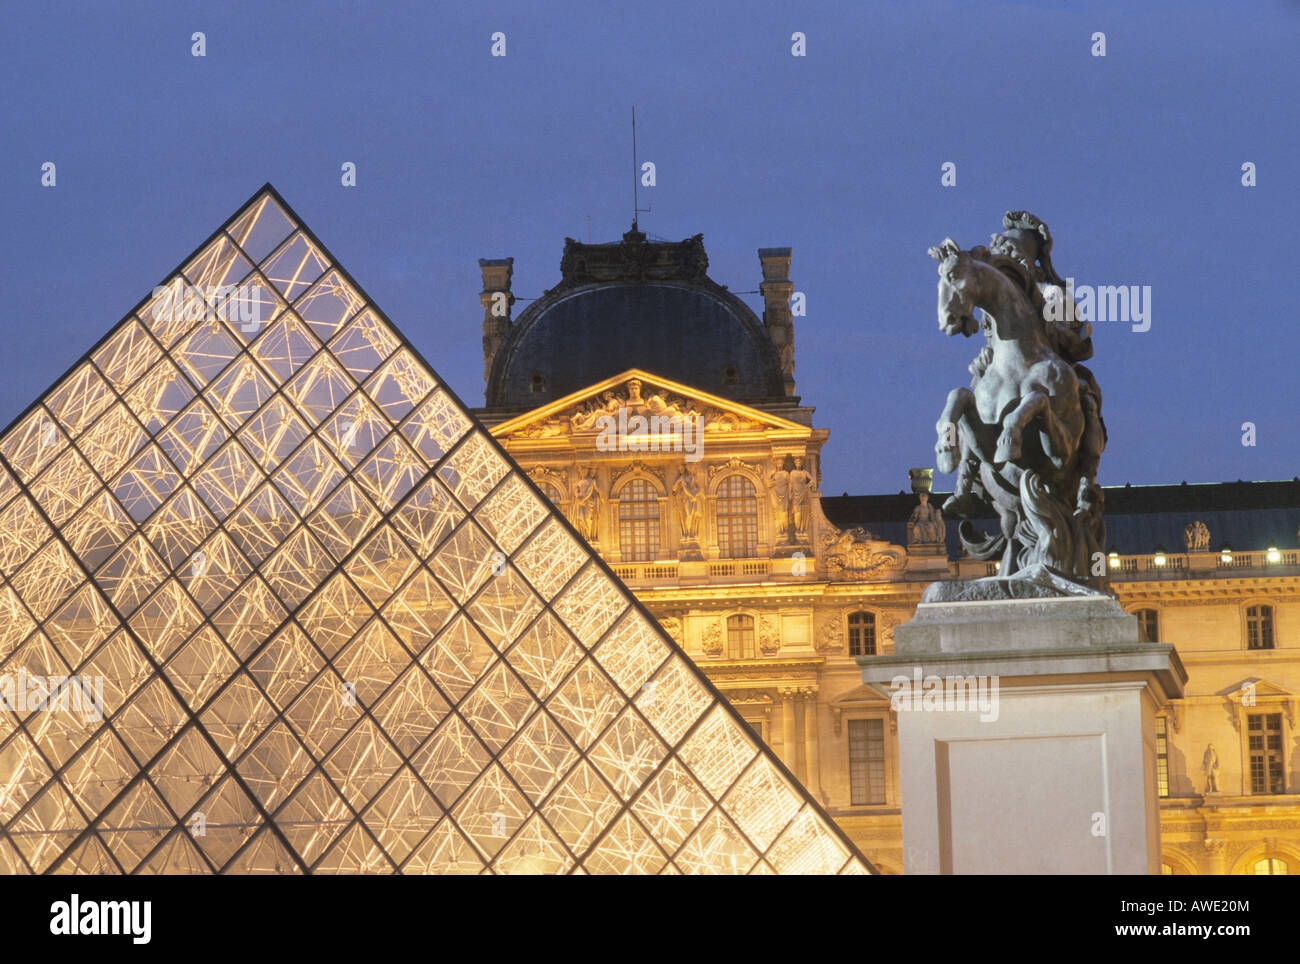 Louvre Parigi Francia piramide in vetro Cour Napoleone, I. M. Pei architetto, cortile twilight turismo museo vecchio e nuovo Foto Stock